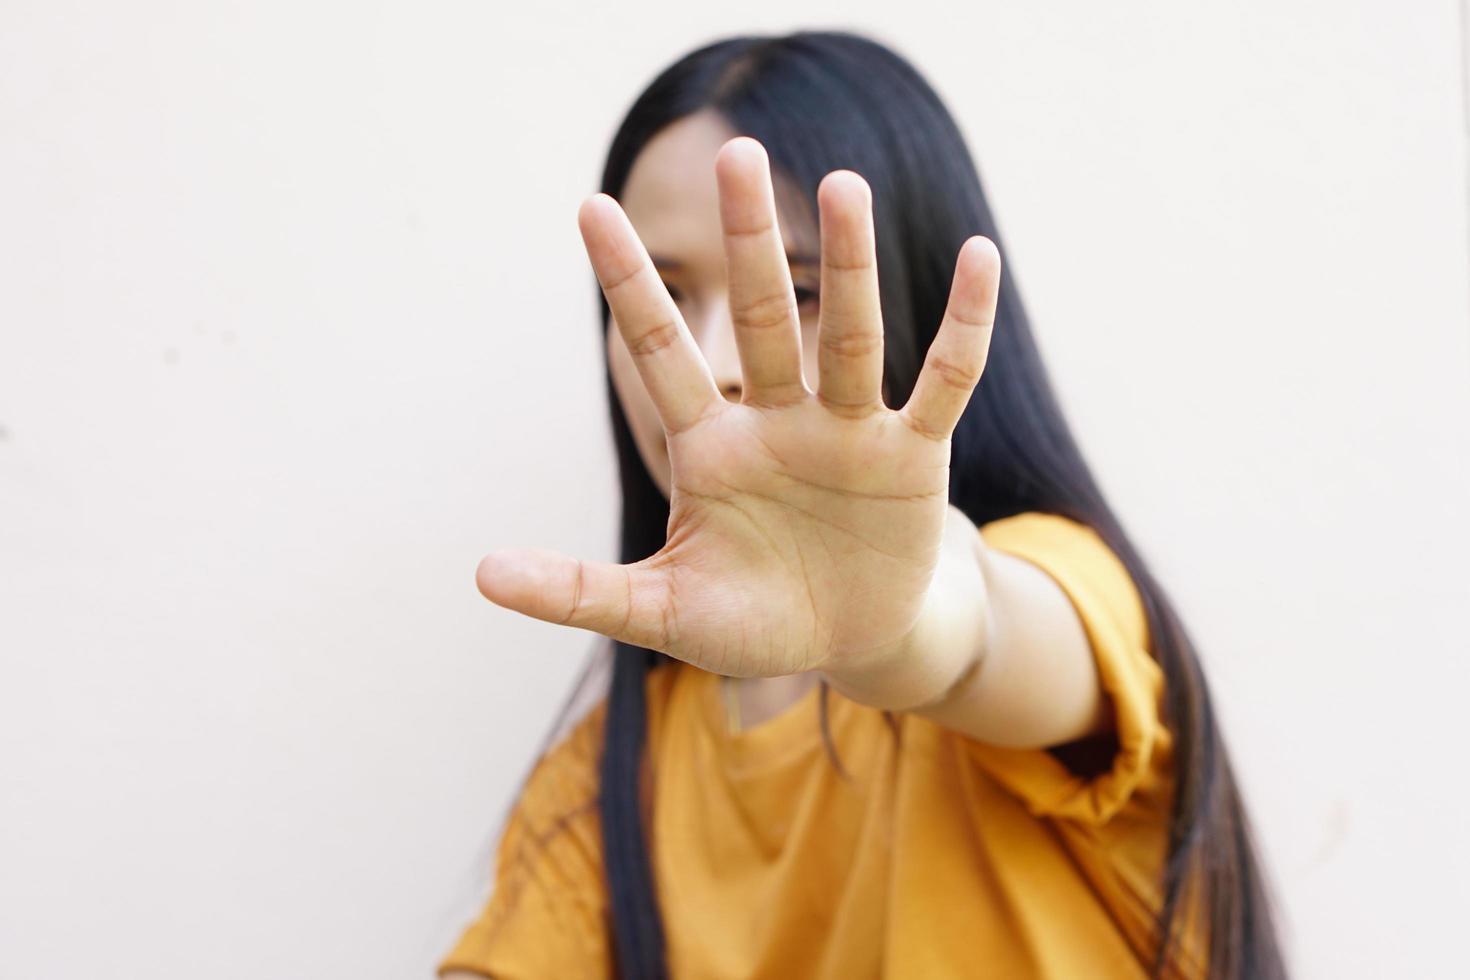 vrouw stak haar hand op om te ontmoedigen, campagne stop geweld tegen vrouwen foto